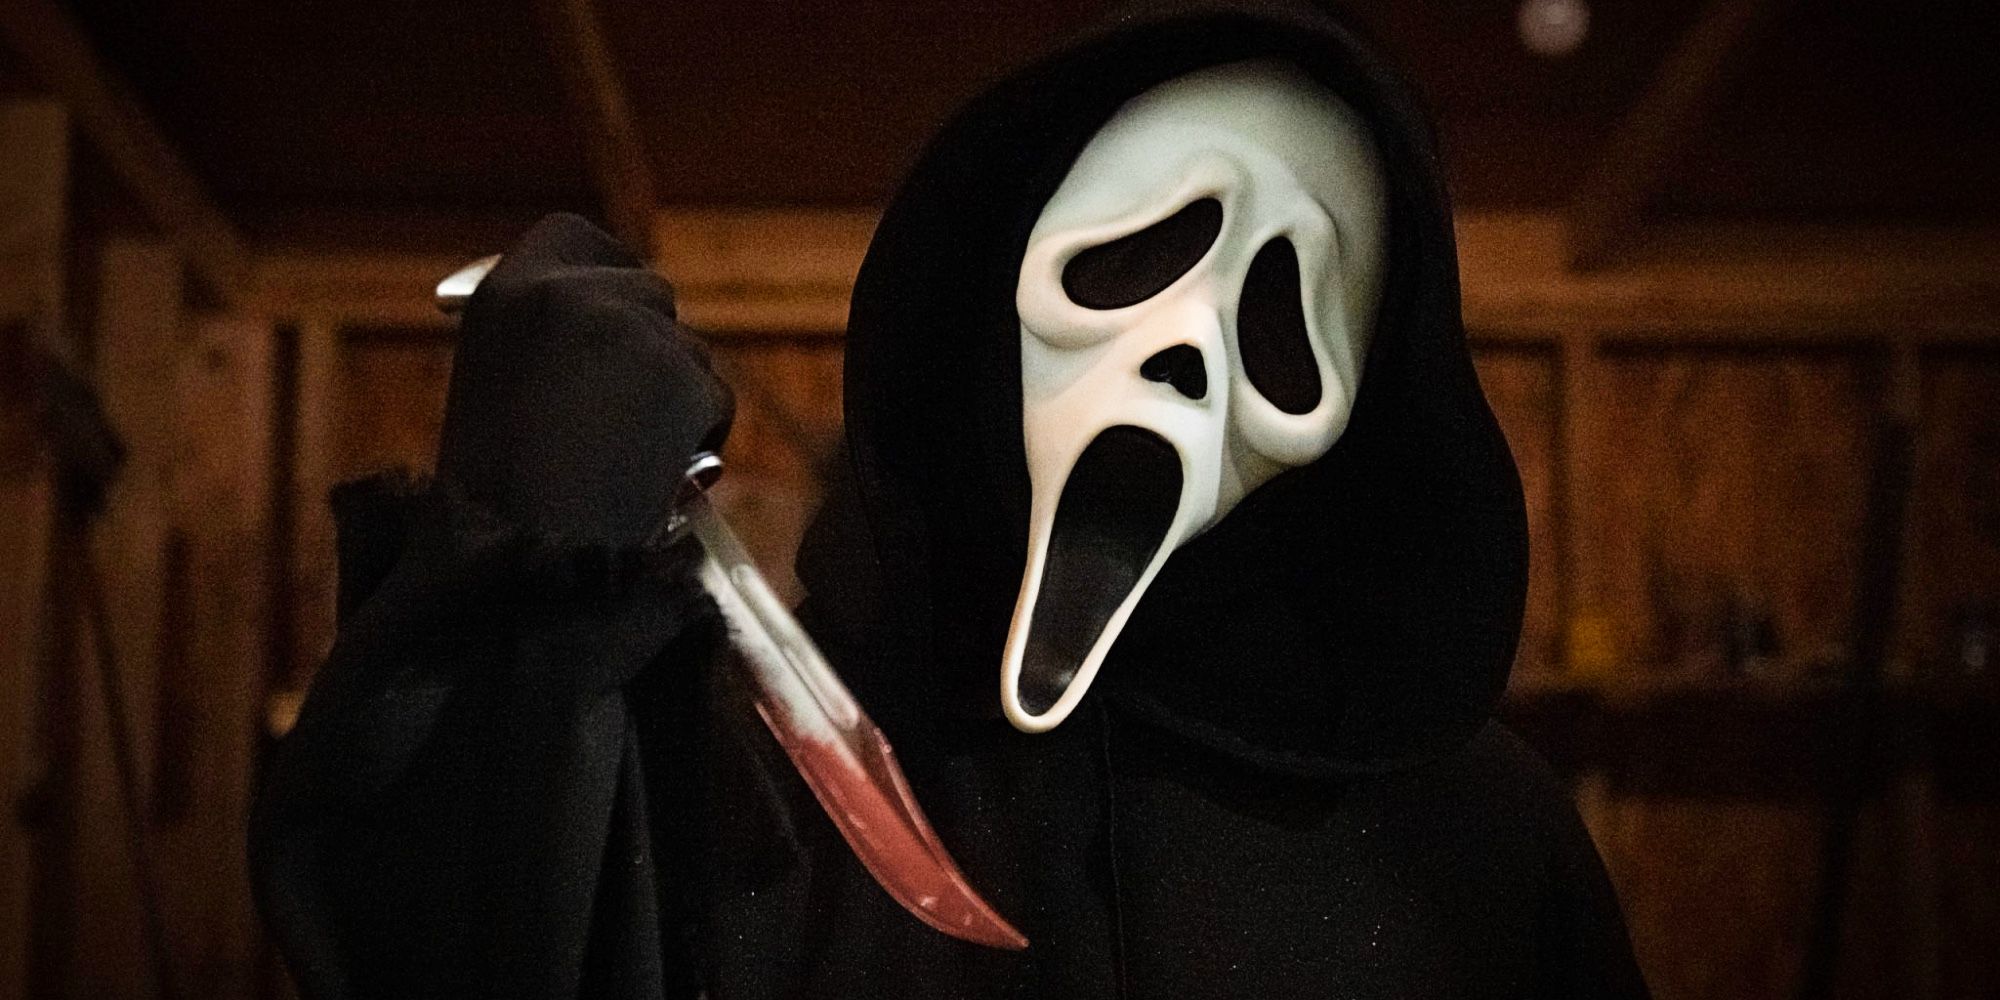 Nueva imagen de la película Scream muestra a Ghostface después de una muerte reciente